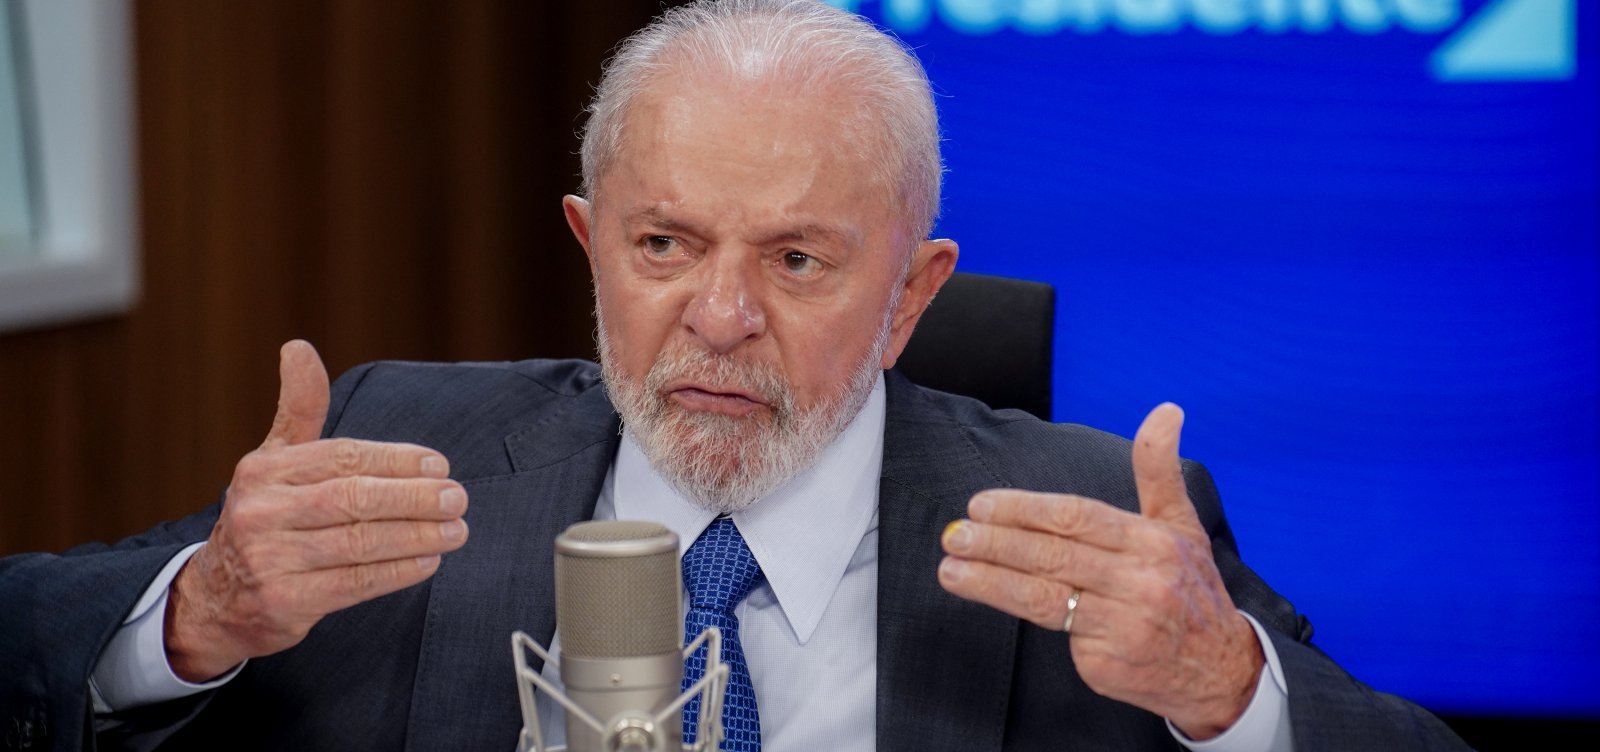 50% aprovam o trabalho de Lula e 47% desaprovam, aponta pesquisa Quaest